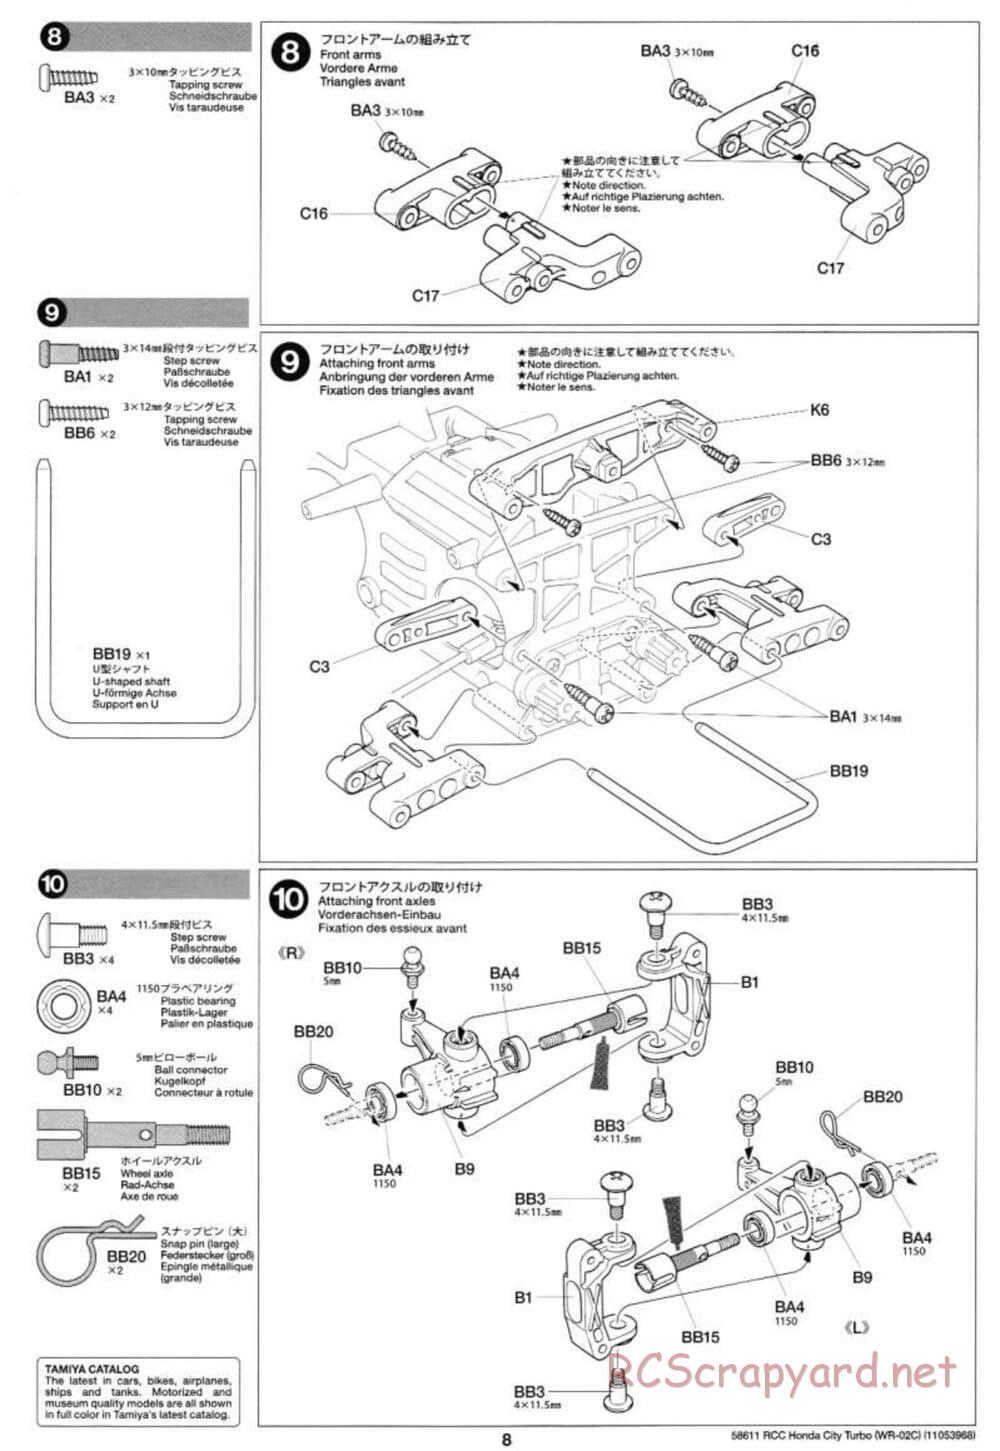 Tamiya - Honda City Turbo - WR-02C Chassis - Manual - Page 8